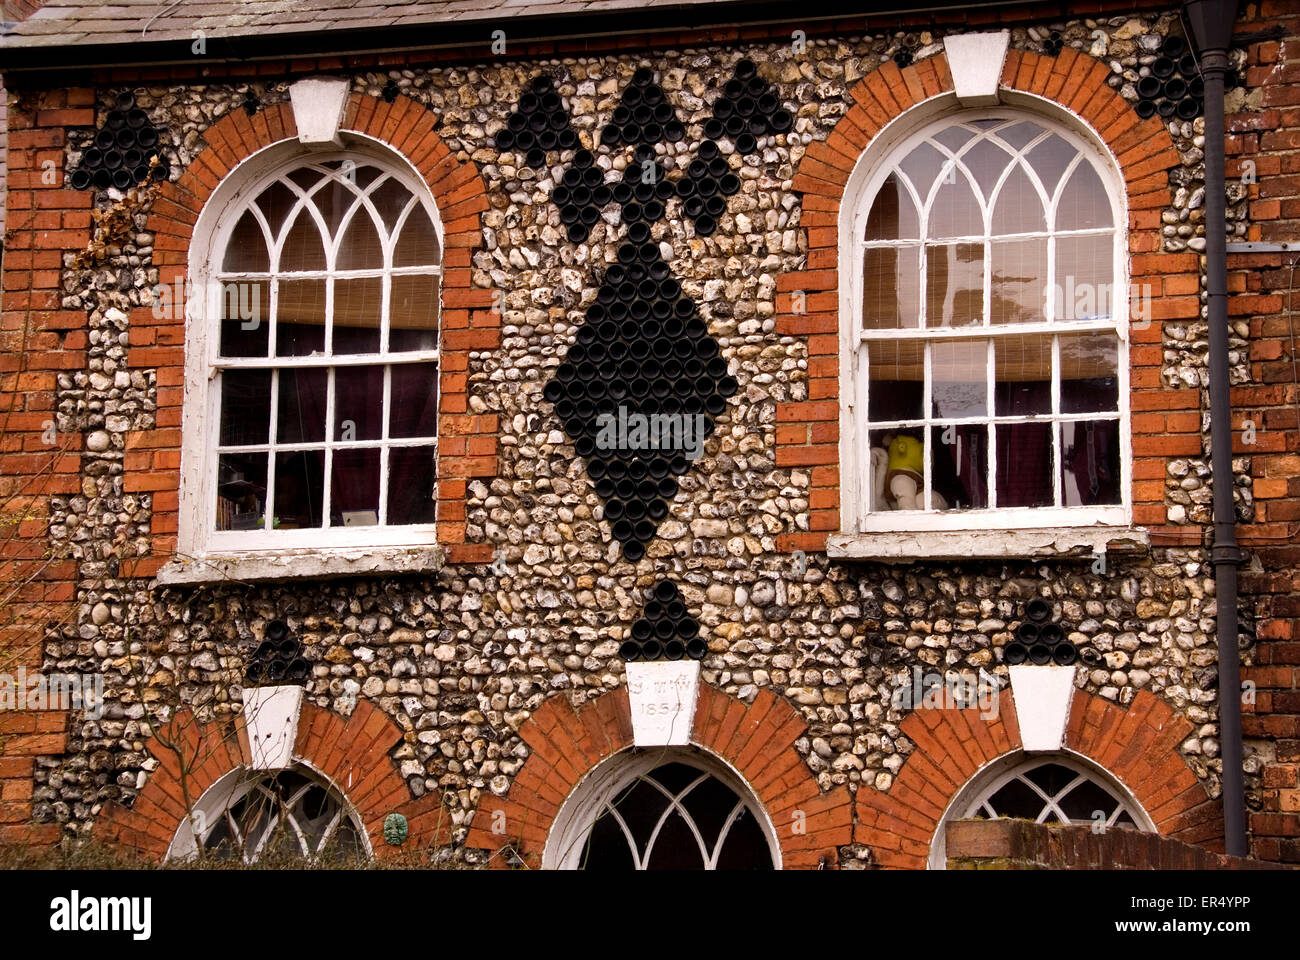 Bucks - Aylesbury town - in mattoni e pietra focaia cottage con facciata decorata - stile gotico windows - Storia sociale Foto Stock